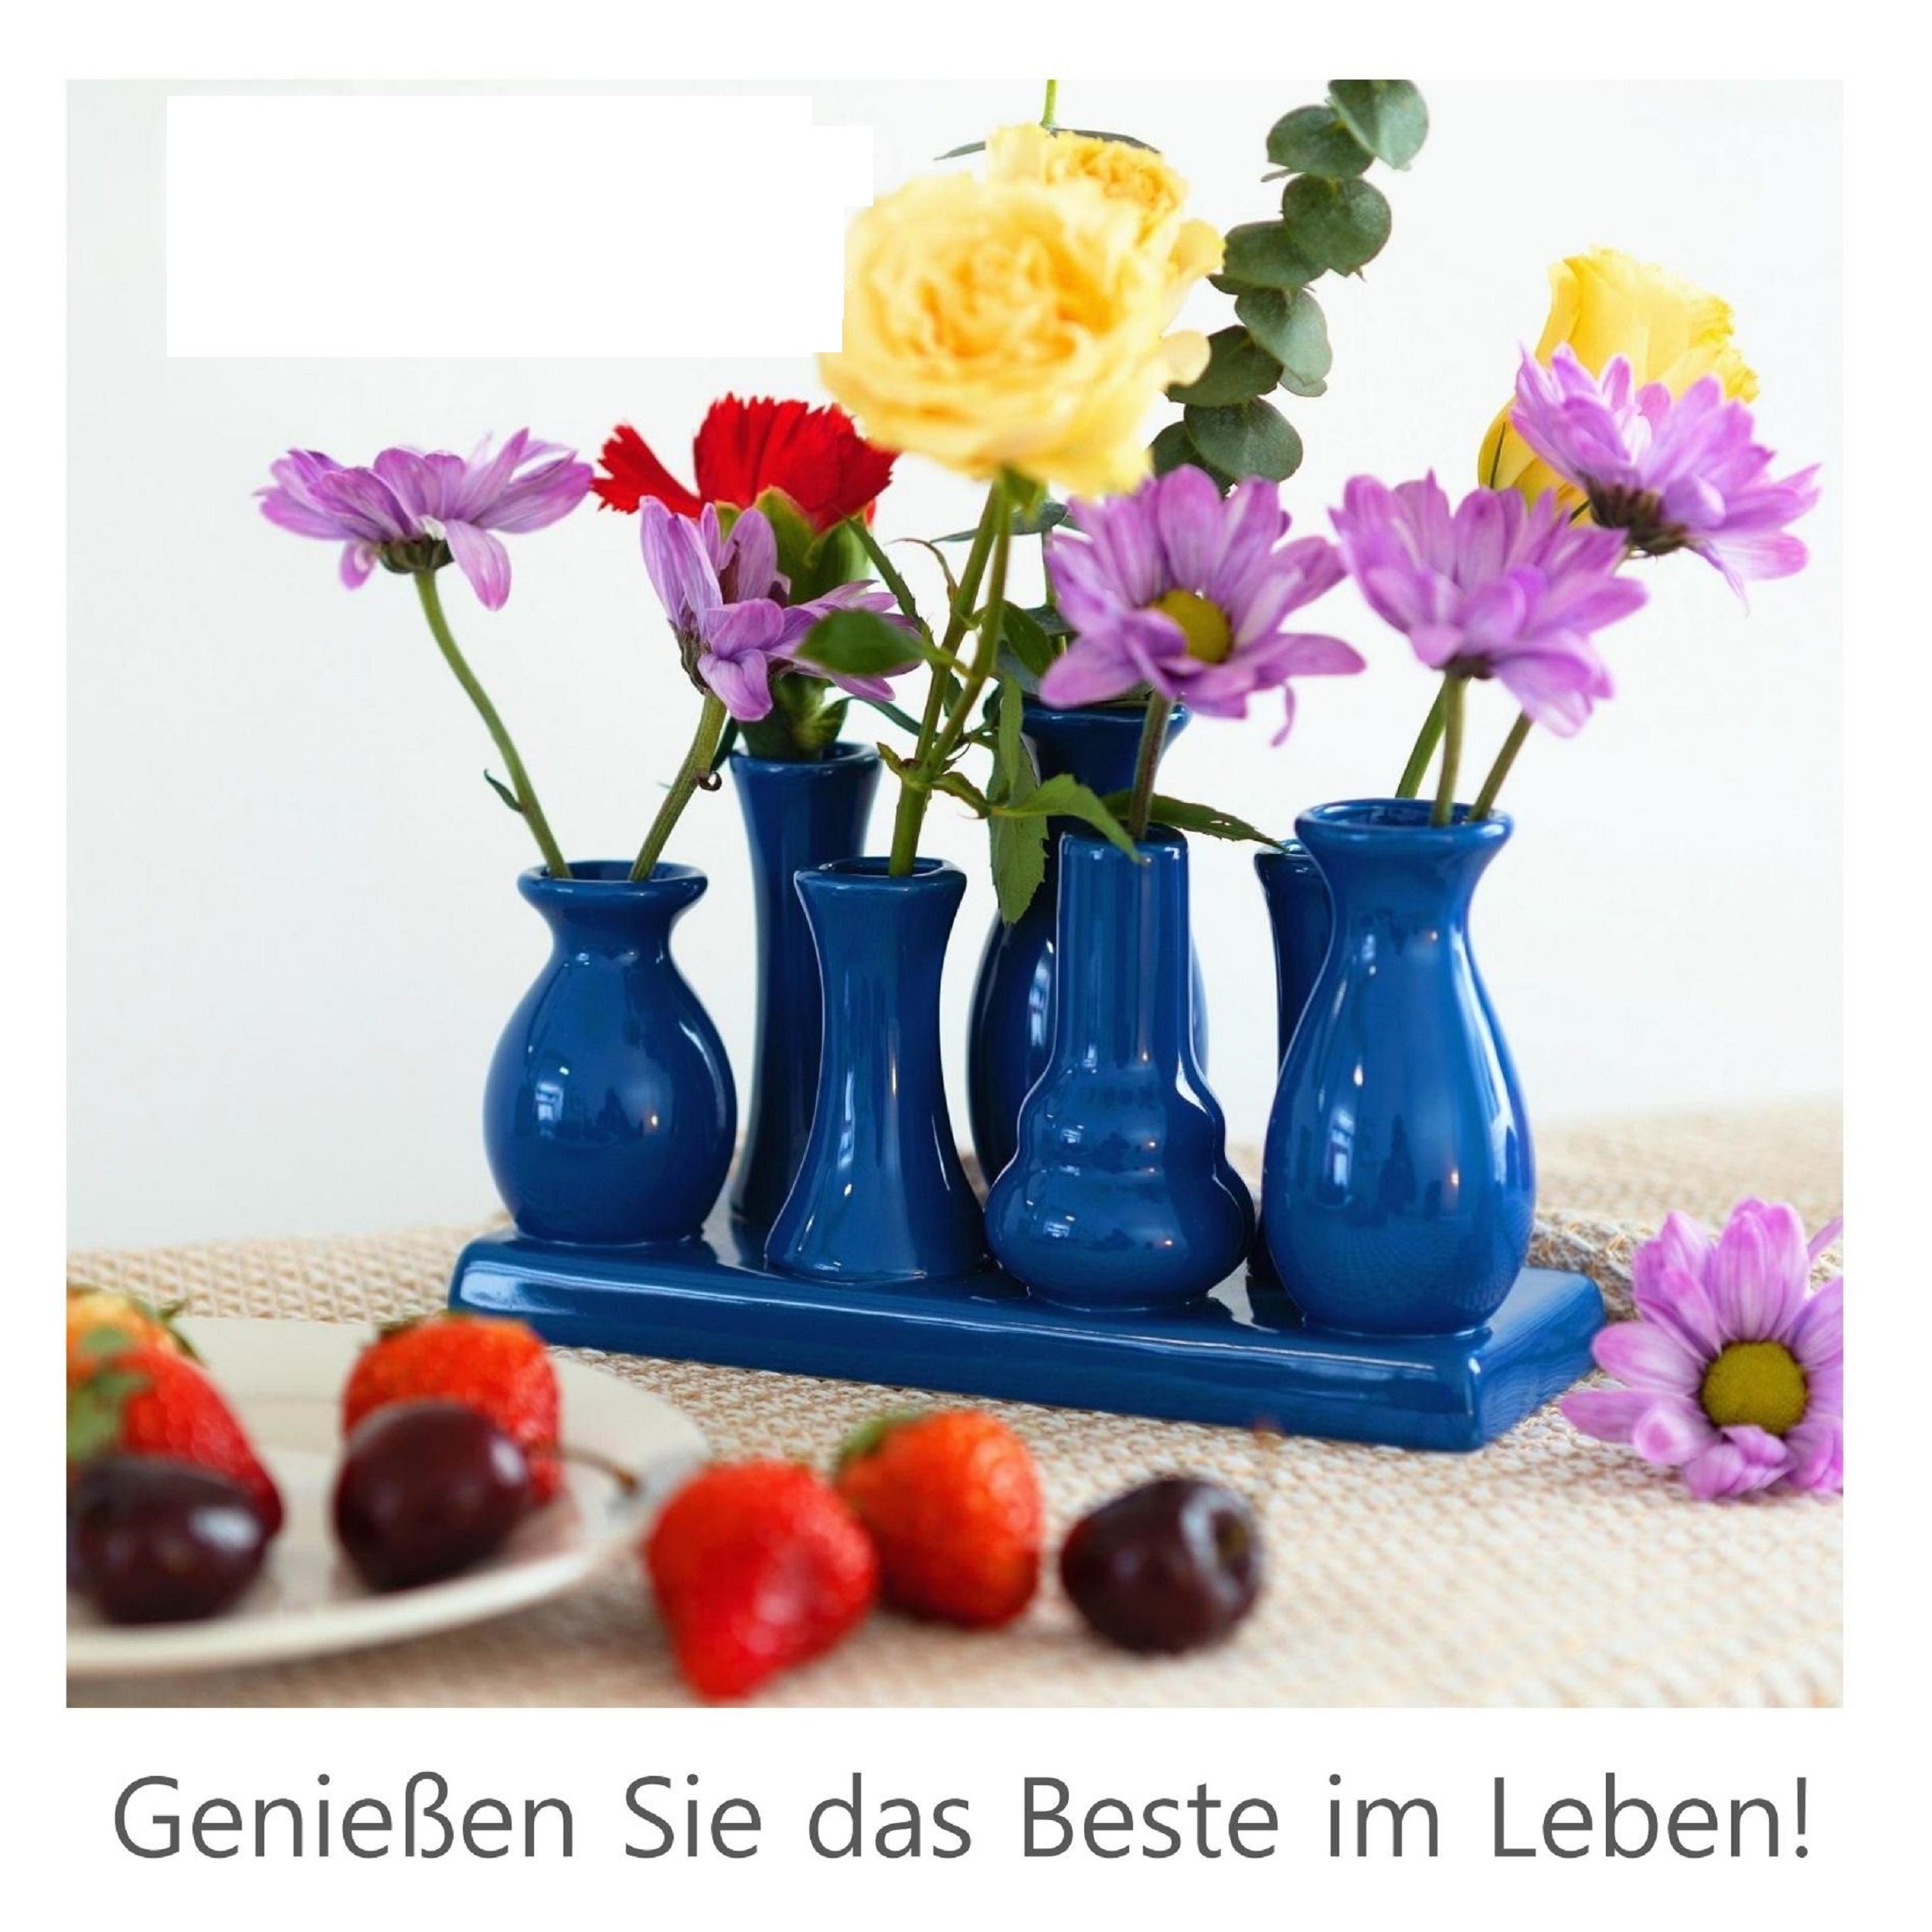 Jinfa Dekovase Handgefertigte kleine Keramik Set (7 Tablett Blumenvasen auf verbunden einem Deko blau), auf Vasen